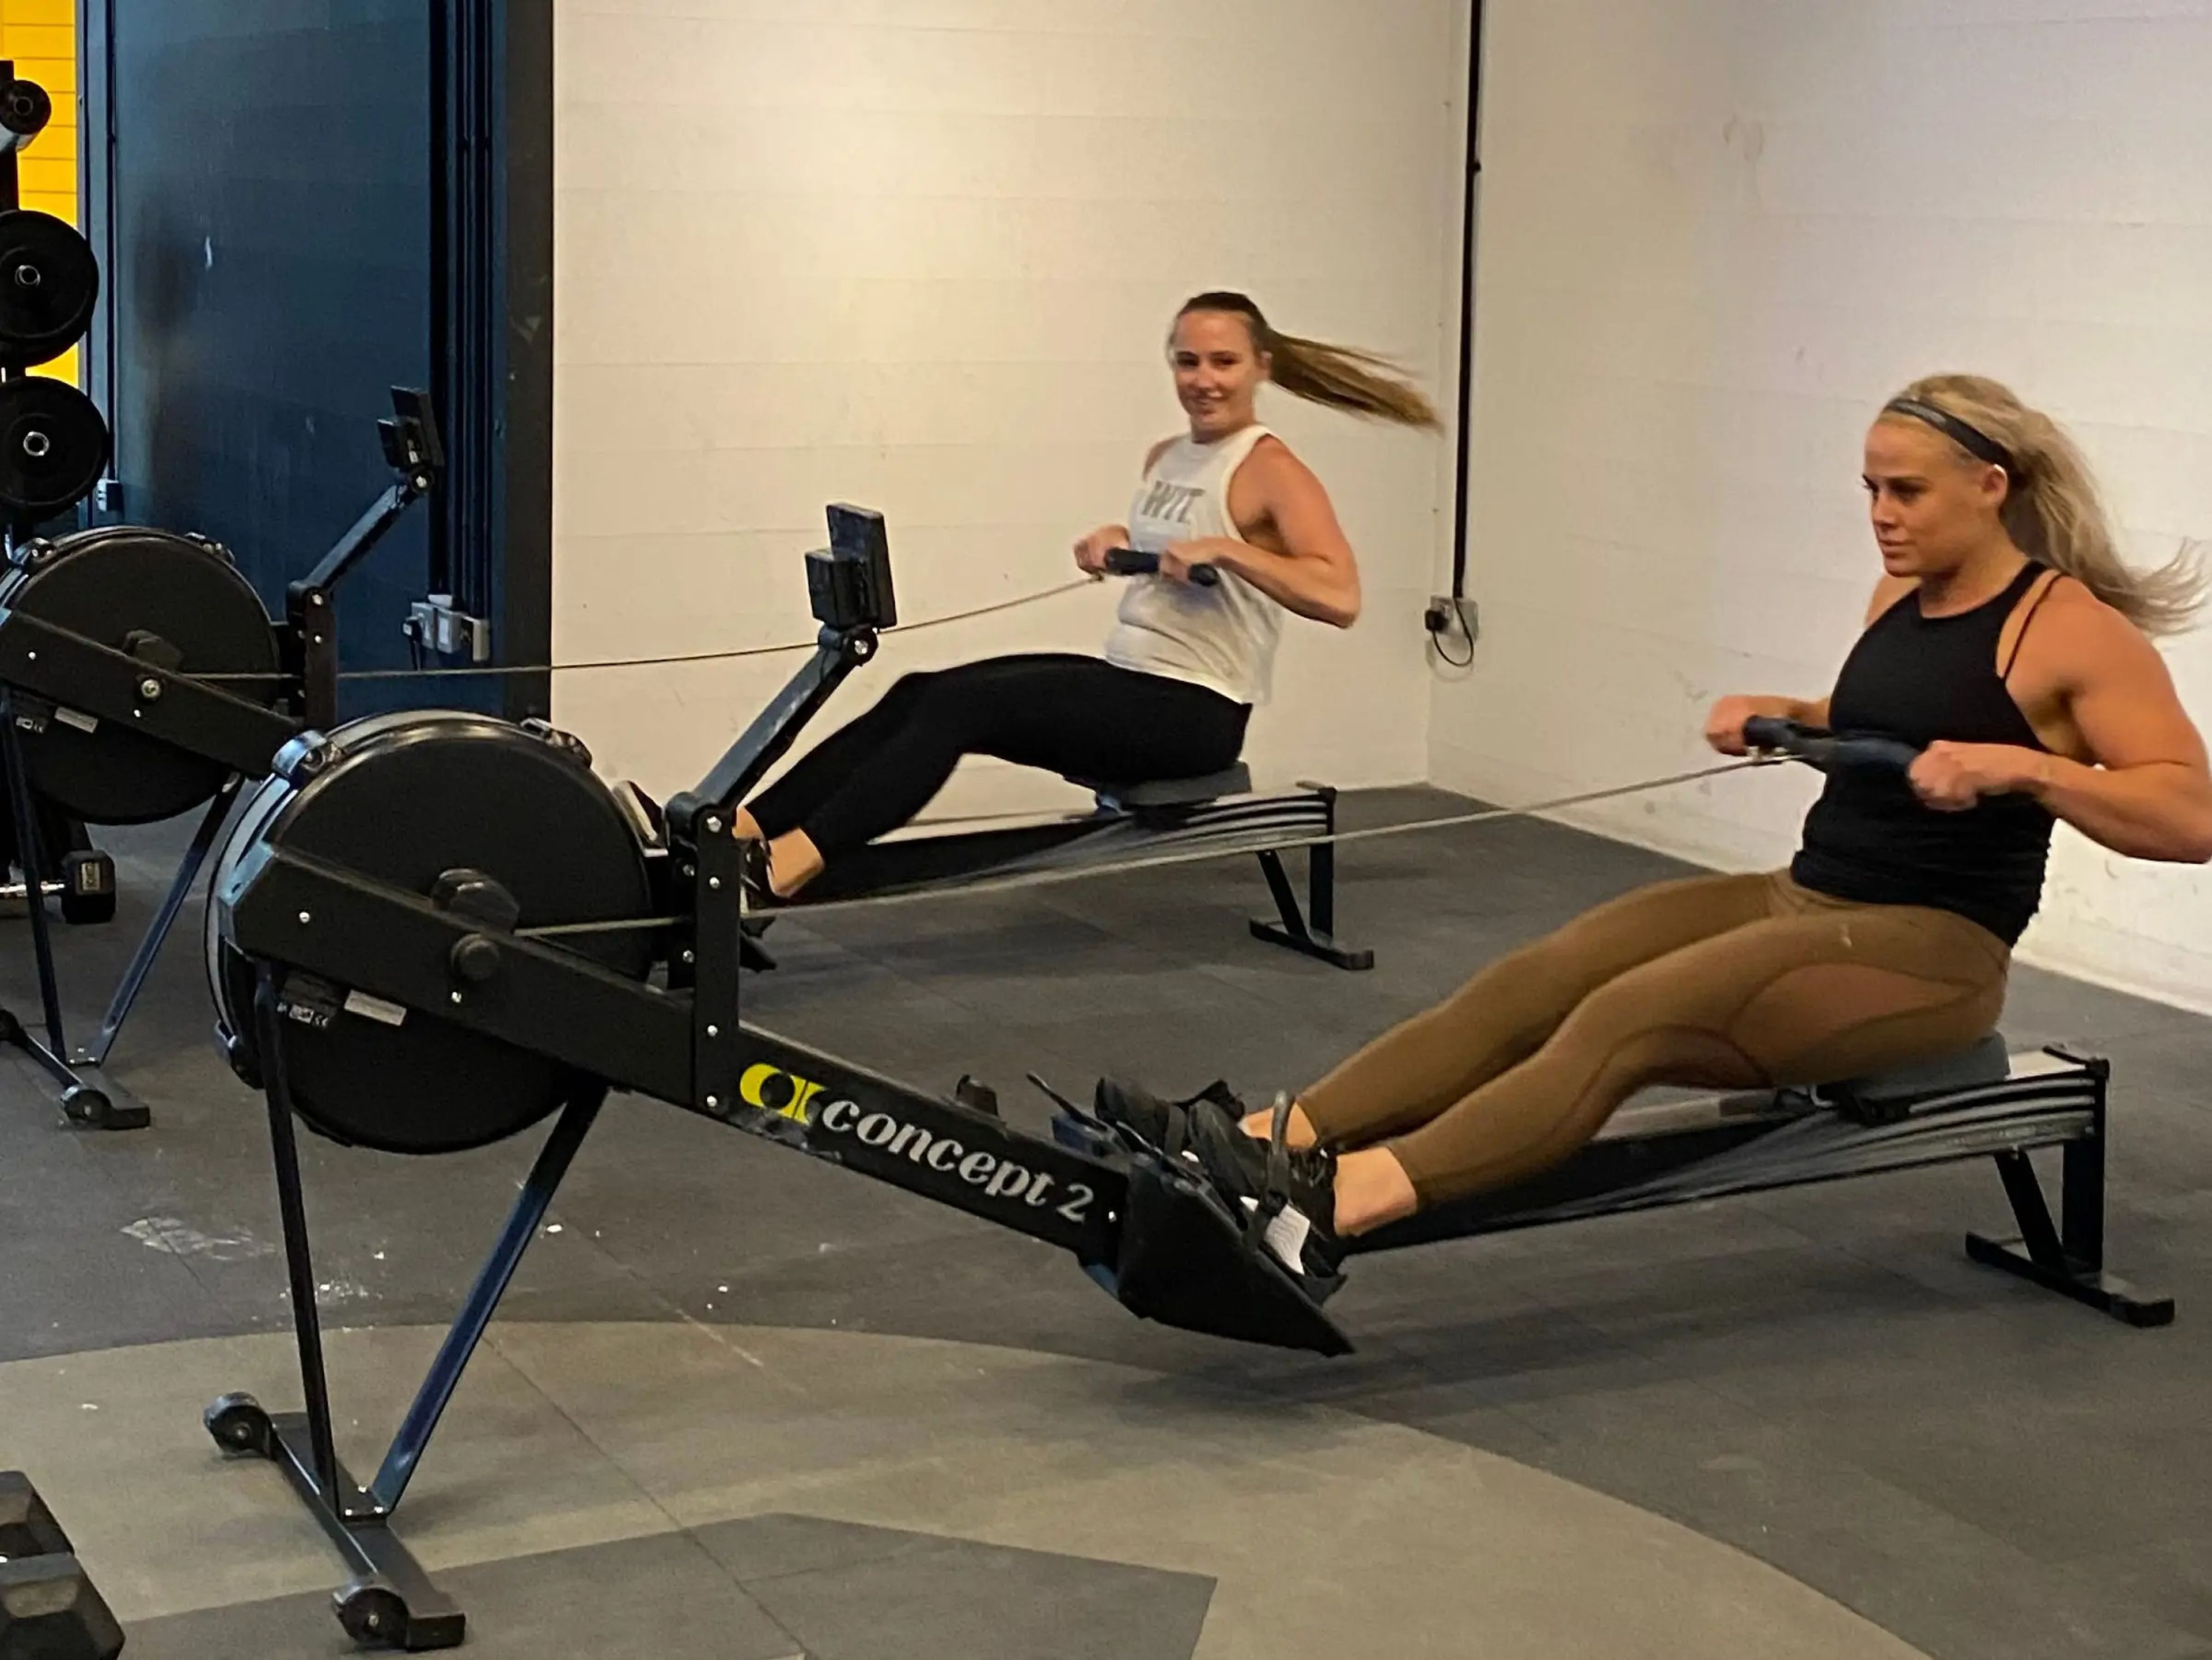 Rachel Hosie se acostumbró a incorporar el entrenamiento de CrossFit después de entrevistar (y entrenar) con la atleta Sara Sigmundsdottir. 